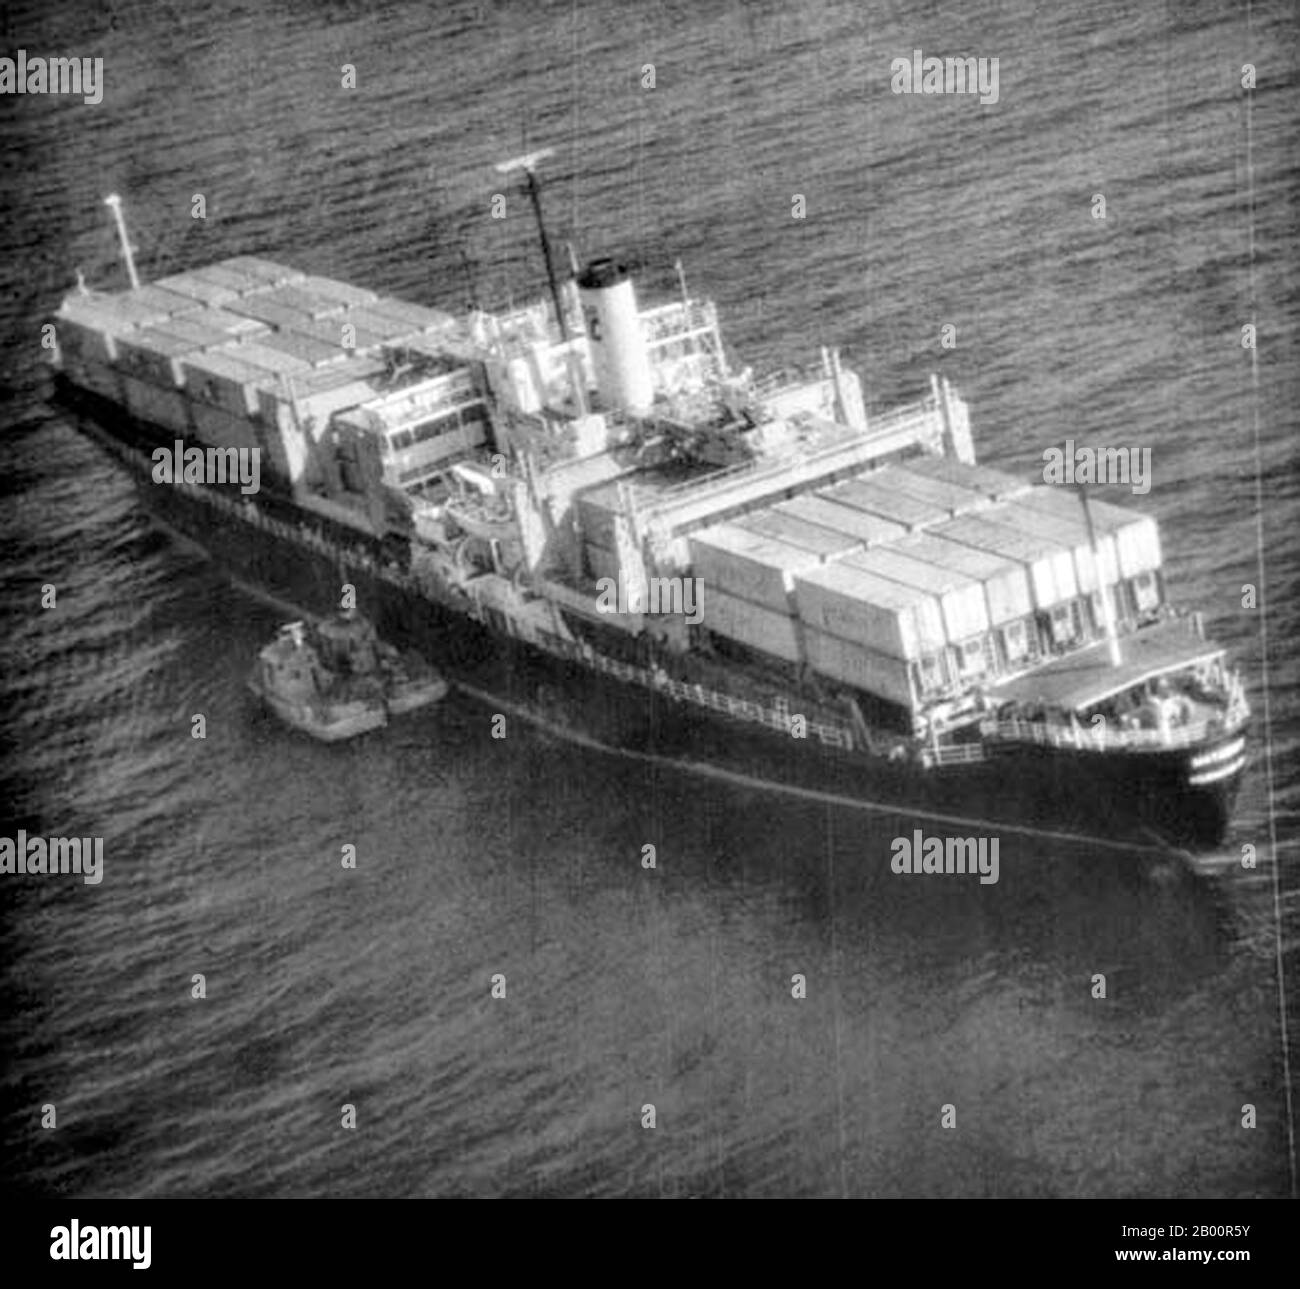 Cambodge: L'incident de Mayaguez, du 12 au 15 mai 1975. Photo de surveillance aérienne montrant deux canots Khmers rouges lors de la saisie initiale du SS Mayaguez. Le 12 mai 1975, les Khmers rouges ont saisi l'USS Mayaguez et son équipage dans les eaux territoriales cambodgiennes alors qu'ils étaient en route vers la Thaïlande. Les États-Unis ont lancé pour la première fois une mission de sauvetage qui s'est terminée par un désastre après l'accident d'un hélicoptère. Un assaut massif a été lancé le 14-15 mai et la majorité de l'équipage a été sauvée de l'île de Koh Tang, mais pas avant que les deux parties aient perdu plus d'une douzaine de victimes. Banque D'Images